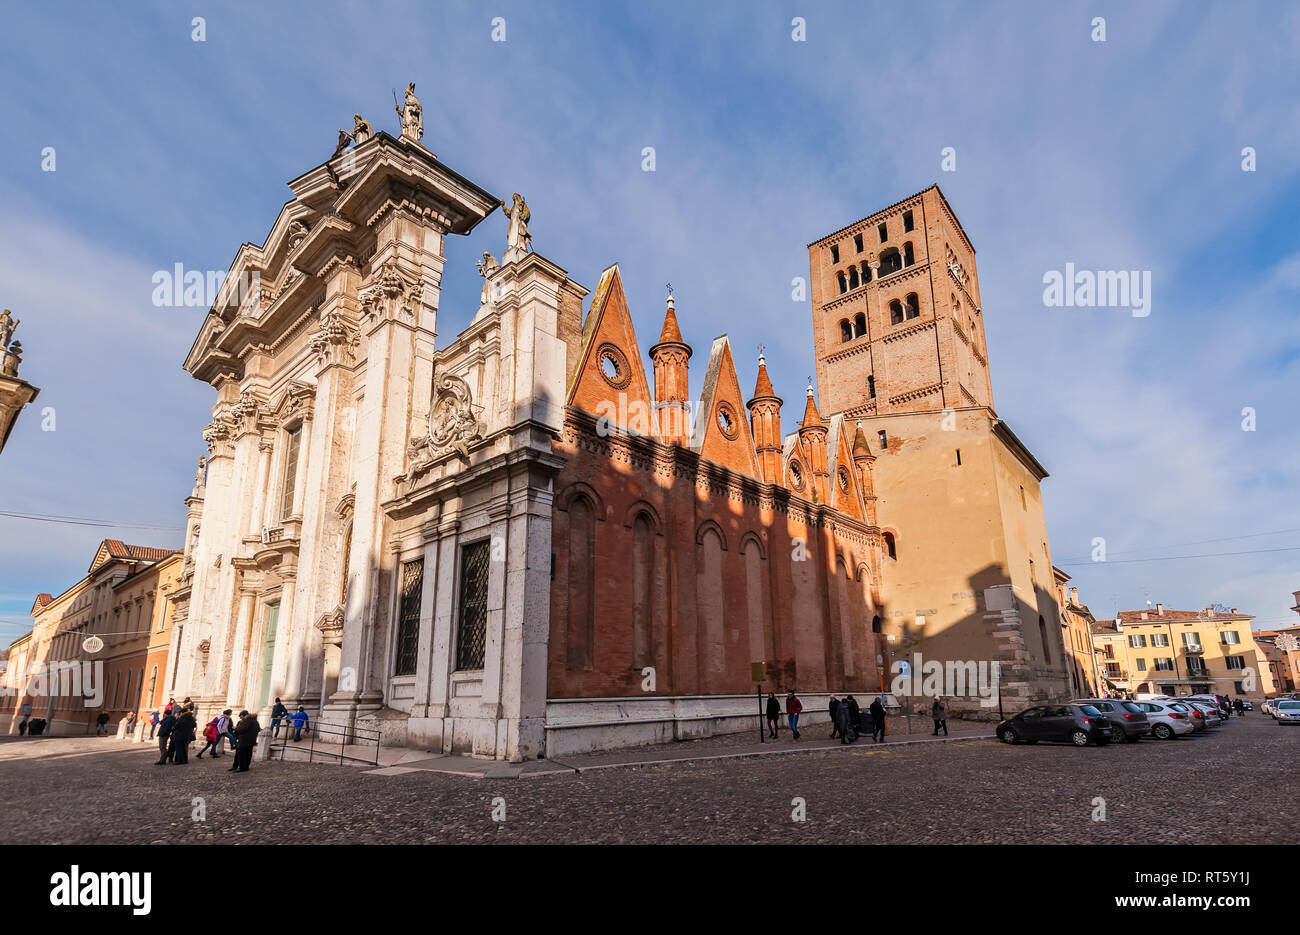 Mantova, Italia - 4 Gennaio 2019: Duomo di Mantova (Cattedrale di San Pietro apostolo, Duomo di Mantova) a Mantova, Lombardia, Italia settentrionale, è a Roma Foto Stock